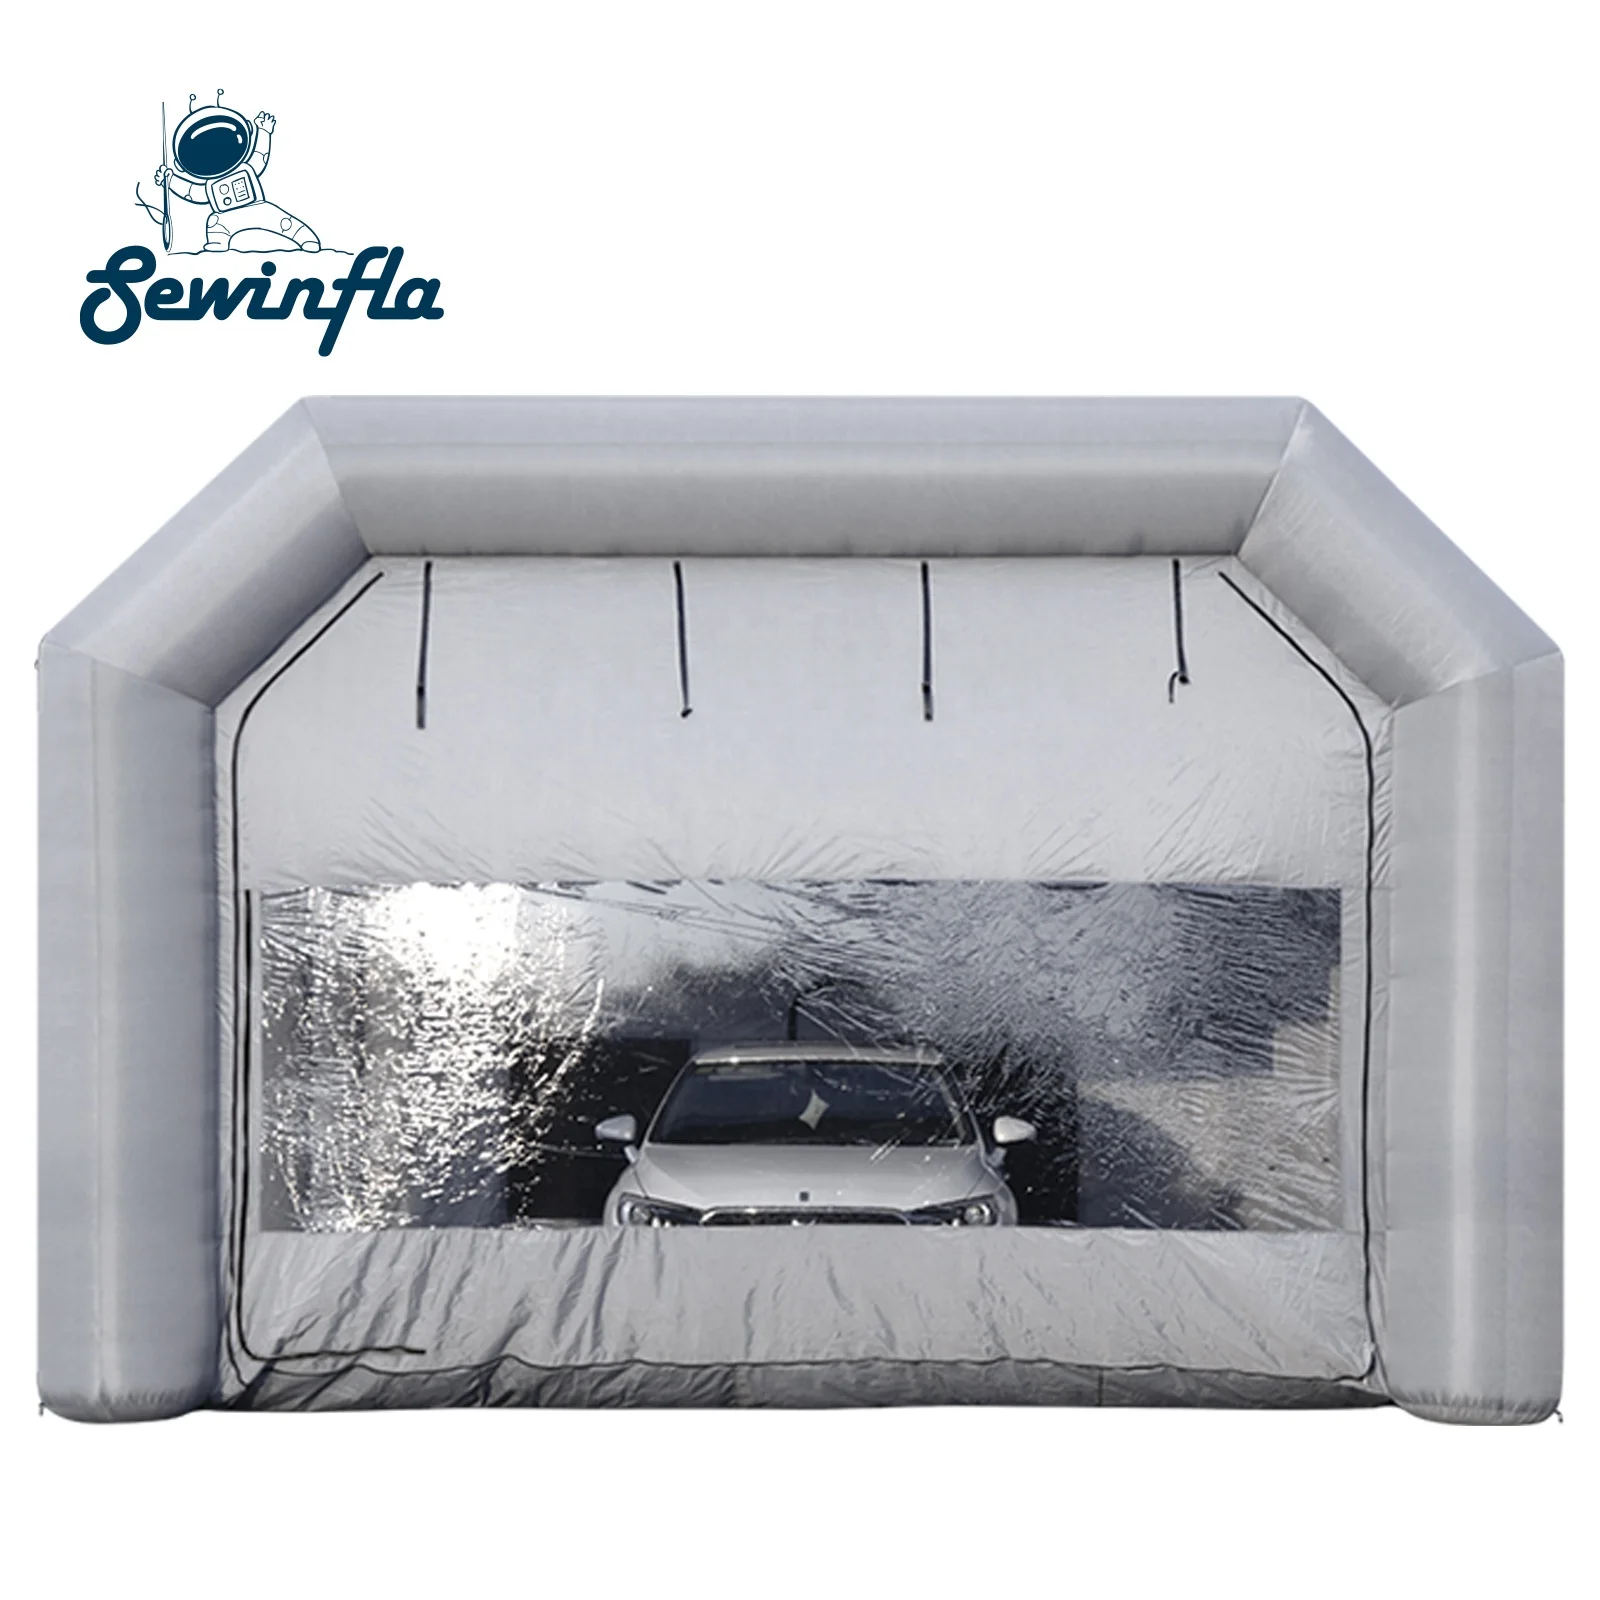 Sewinfla надувная покрасочная камера 30x20x13 футов с воздуходувками профессиональная надувная покрасочная камера портативная покраска для автомобиля палатка